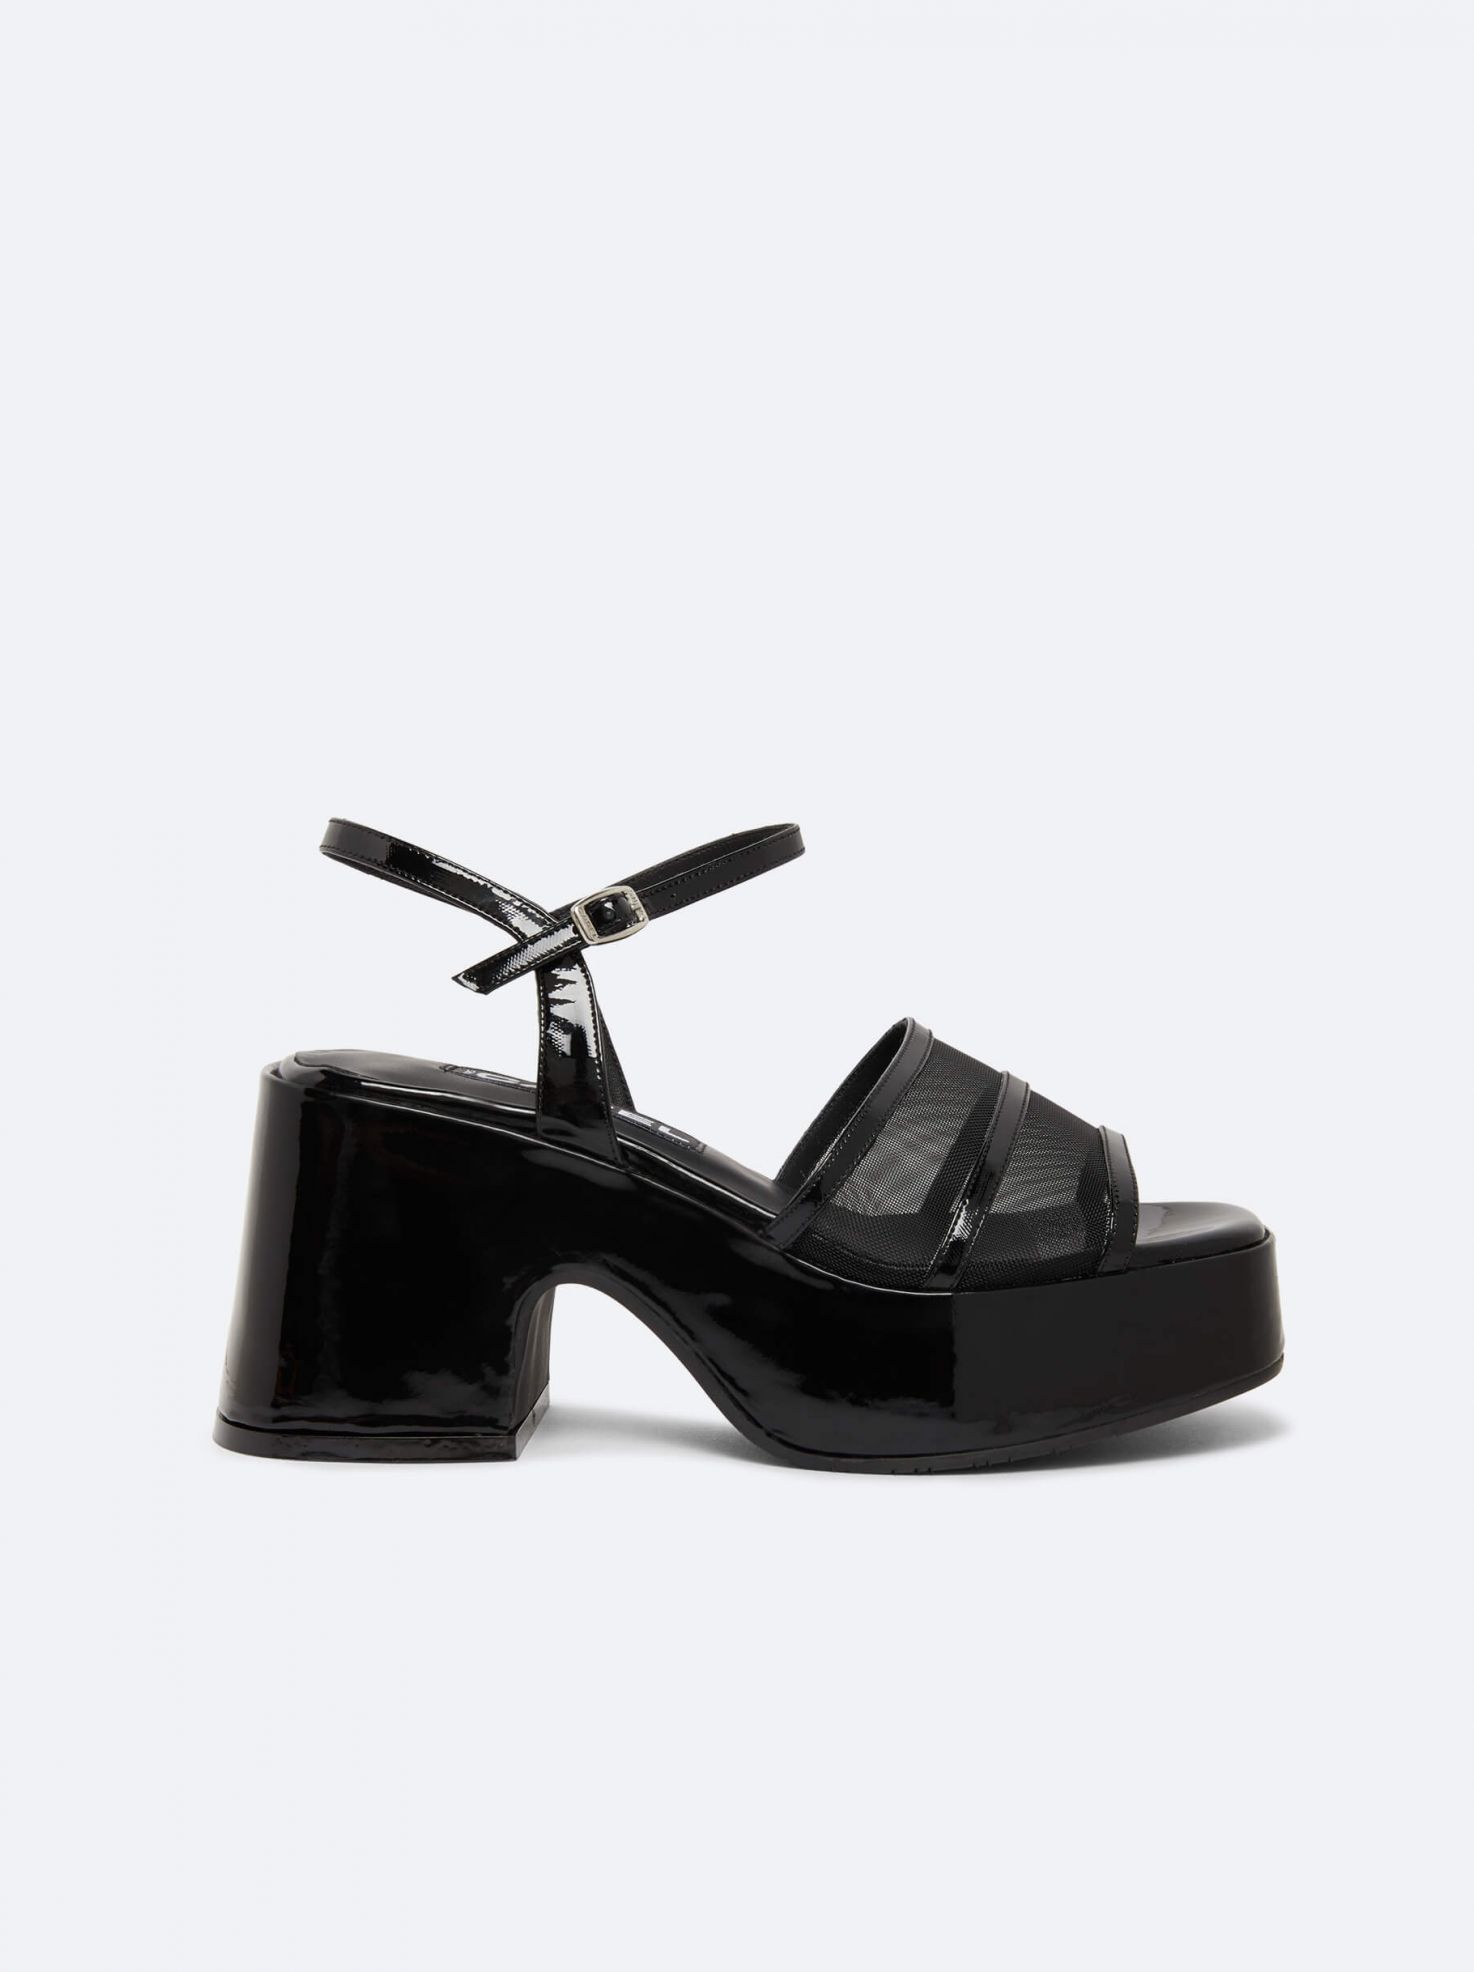 FLOWER Black leather platform mules | Carel Paris Shoes